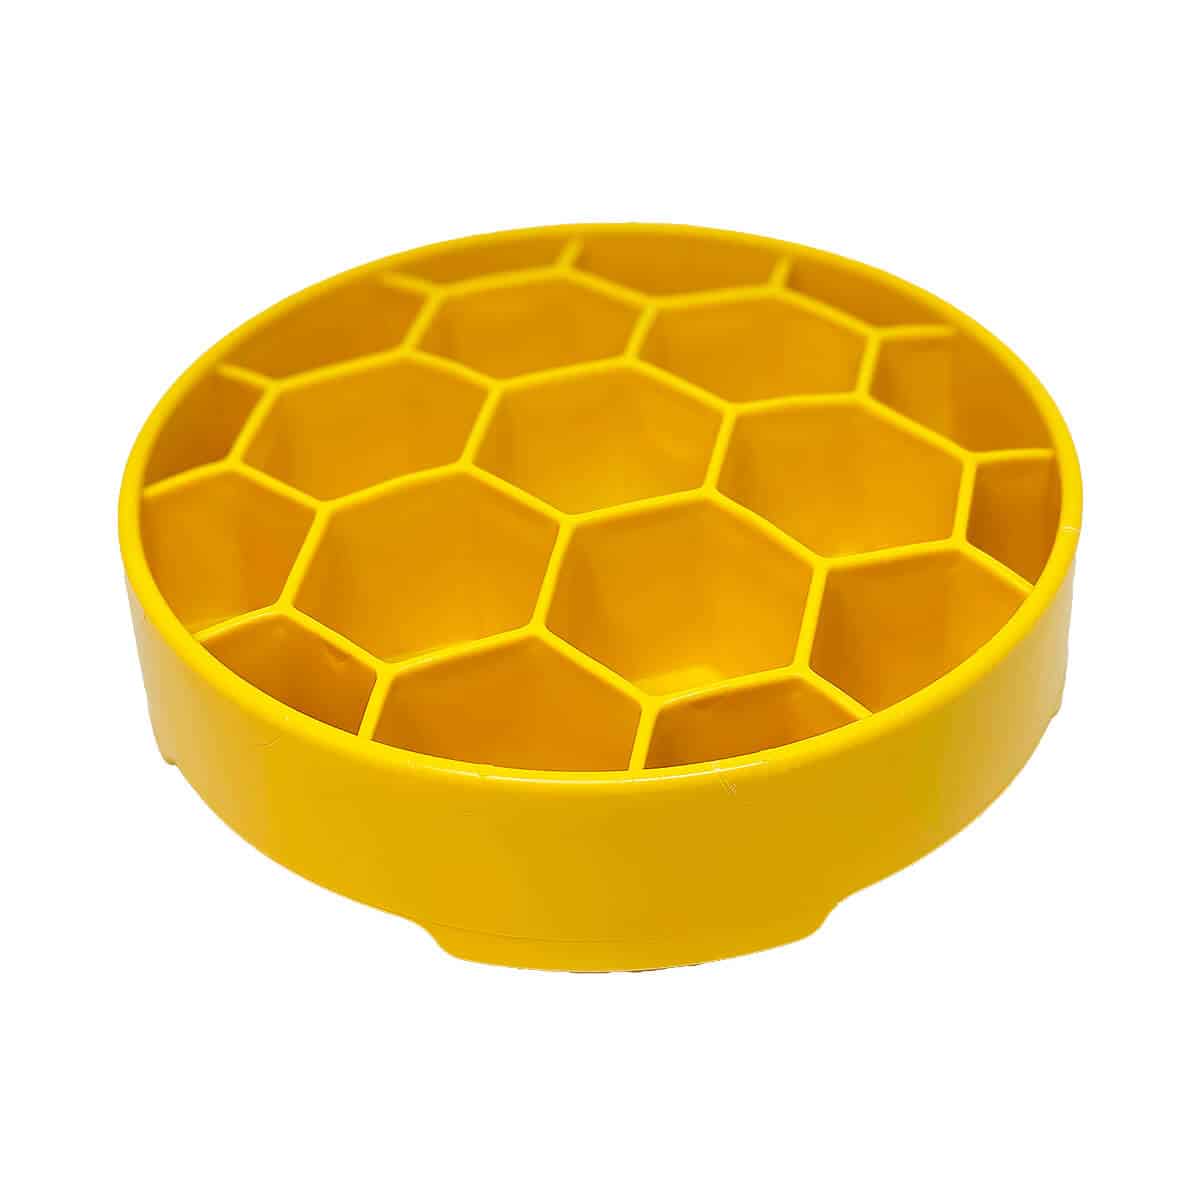 Honeycomb virikekuppi edestä katsottuna.